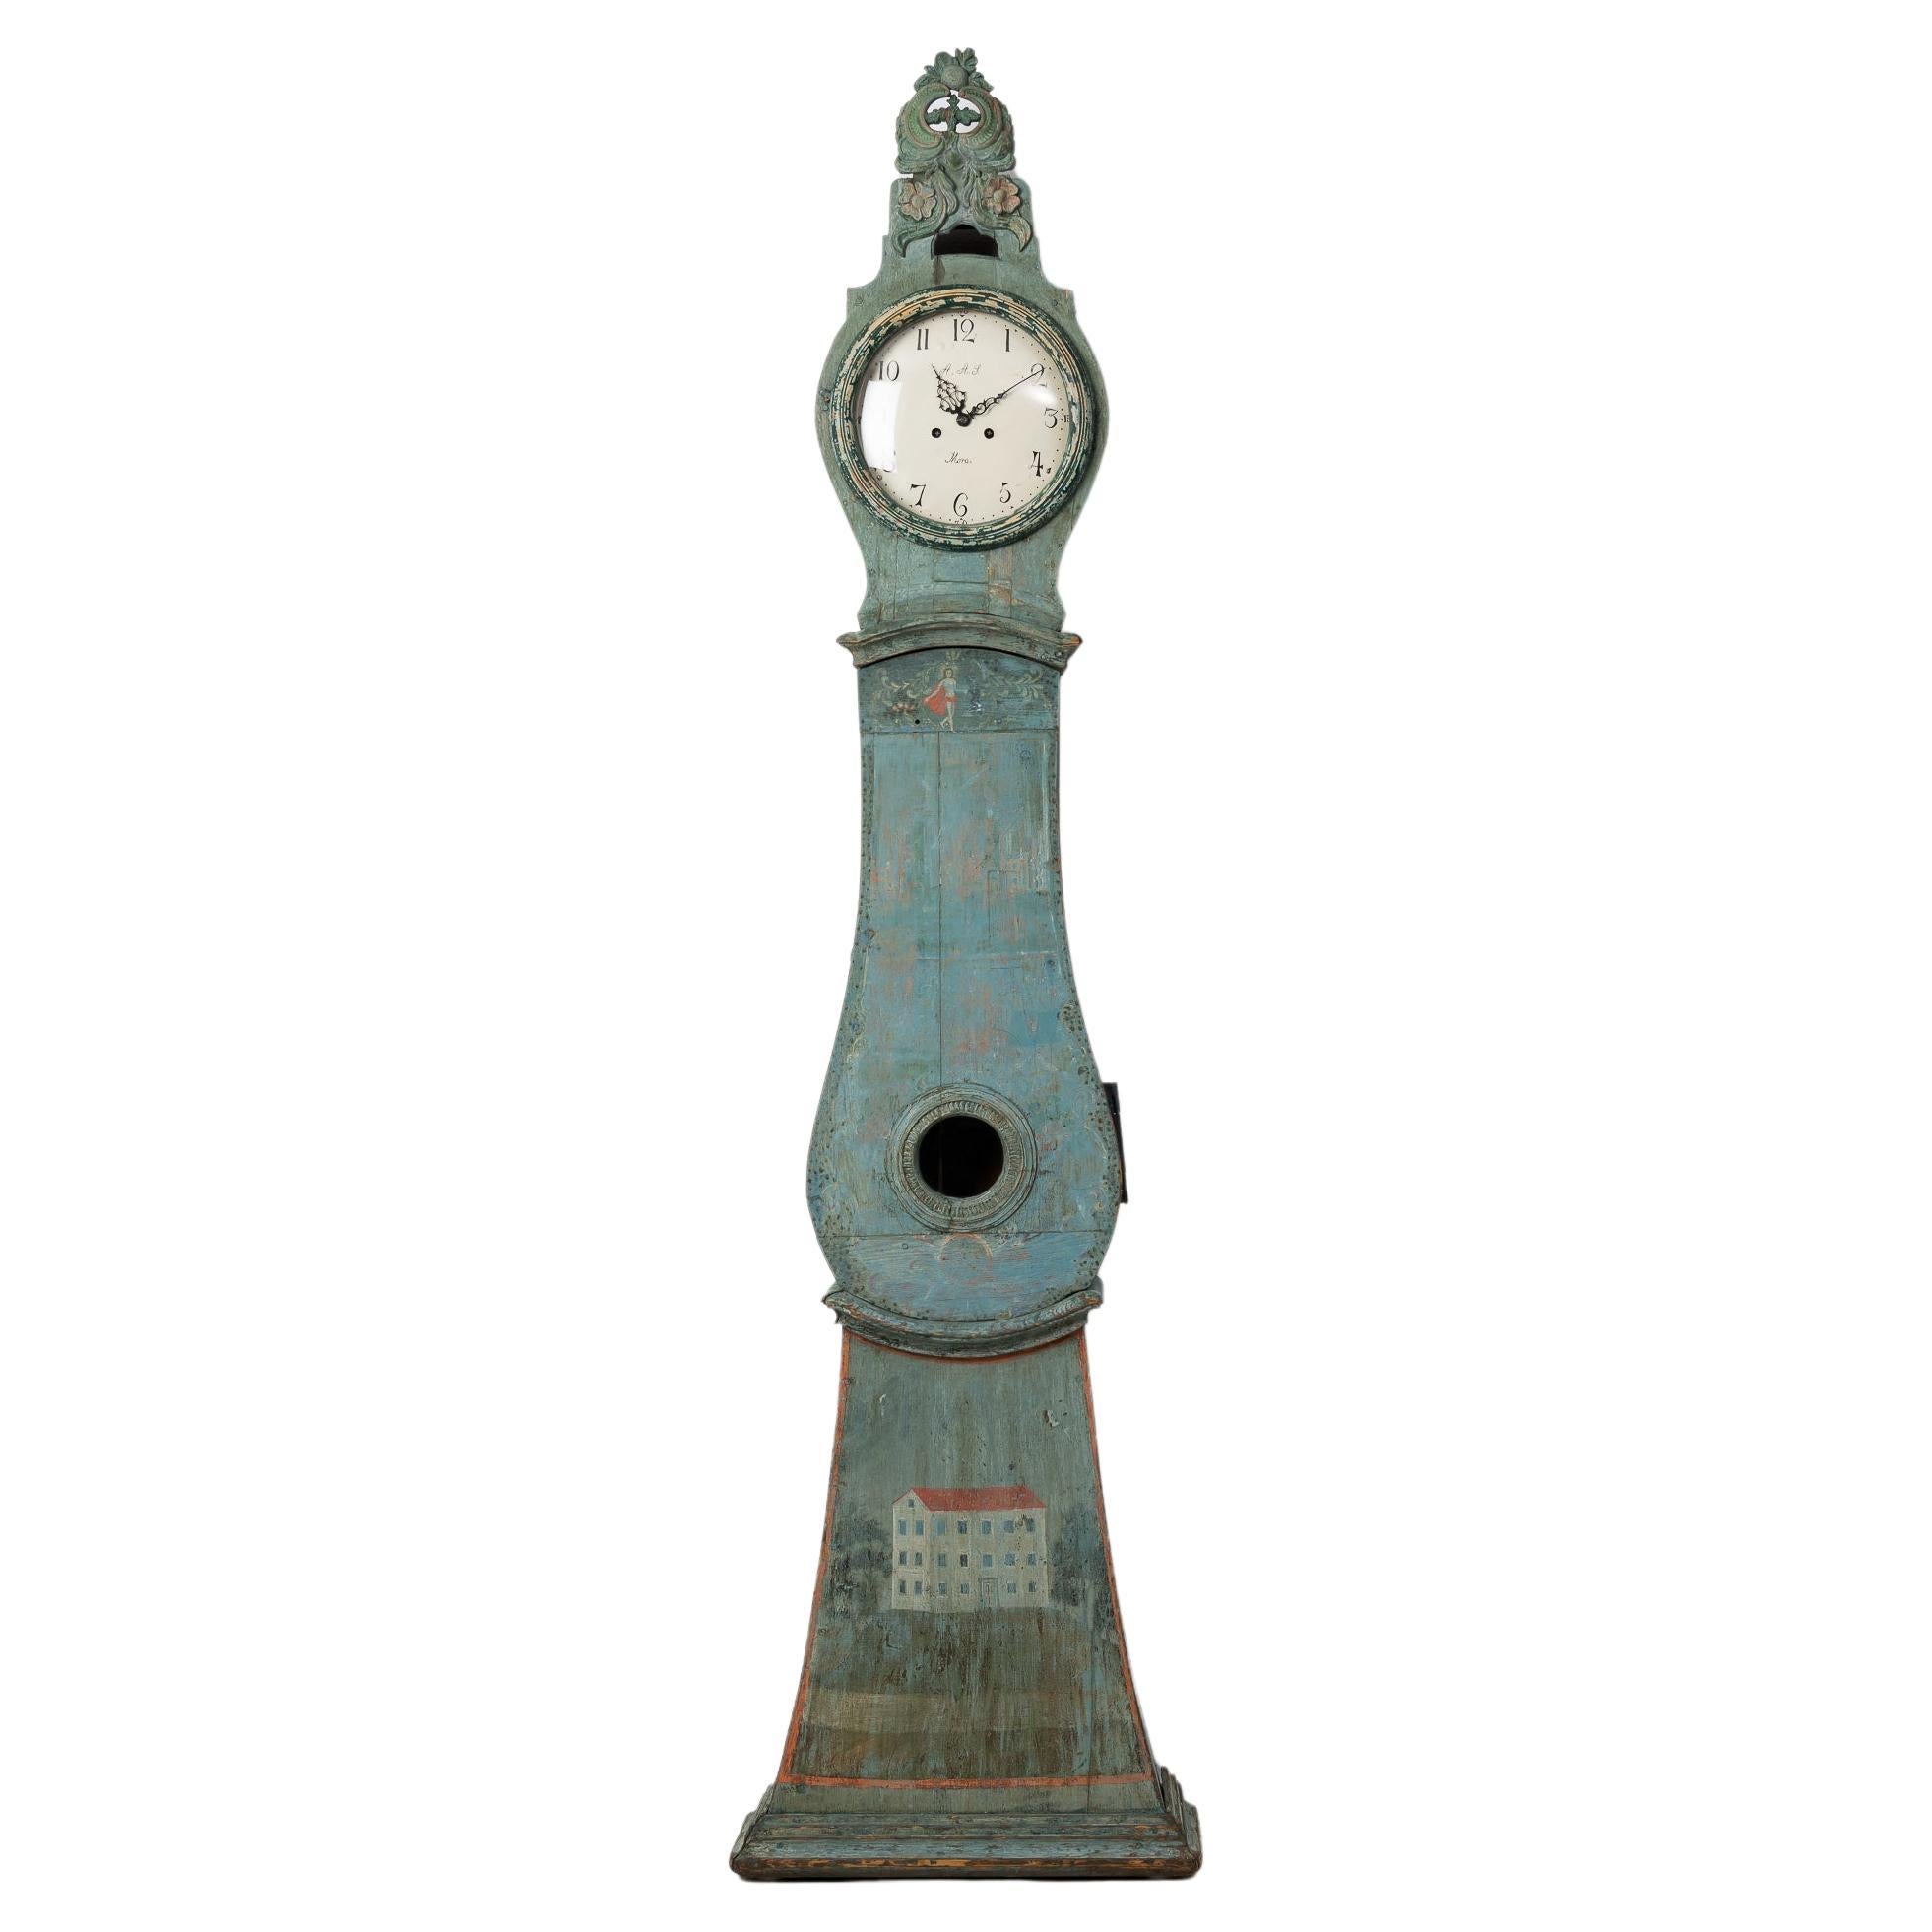 Ancienne horloge suédoise du Nord suédoise originale peinte en bleu et vert